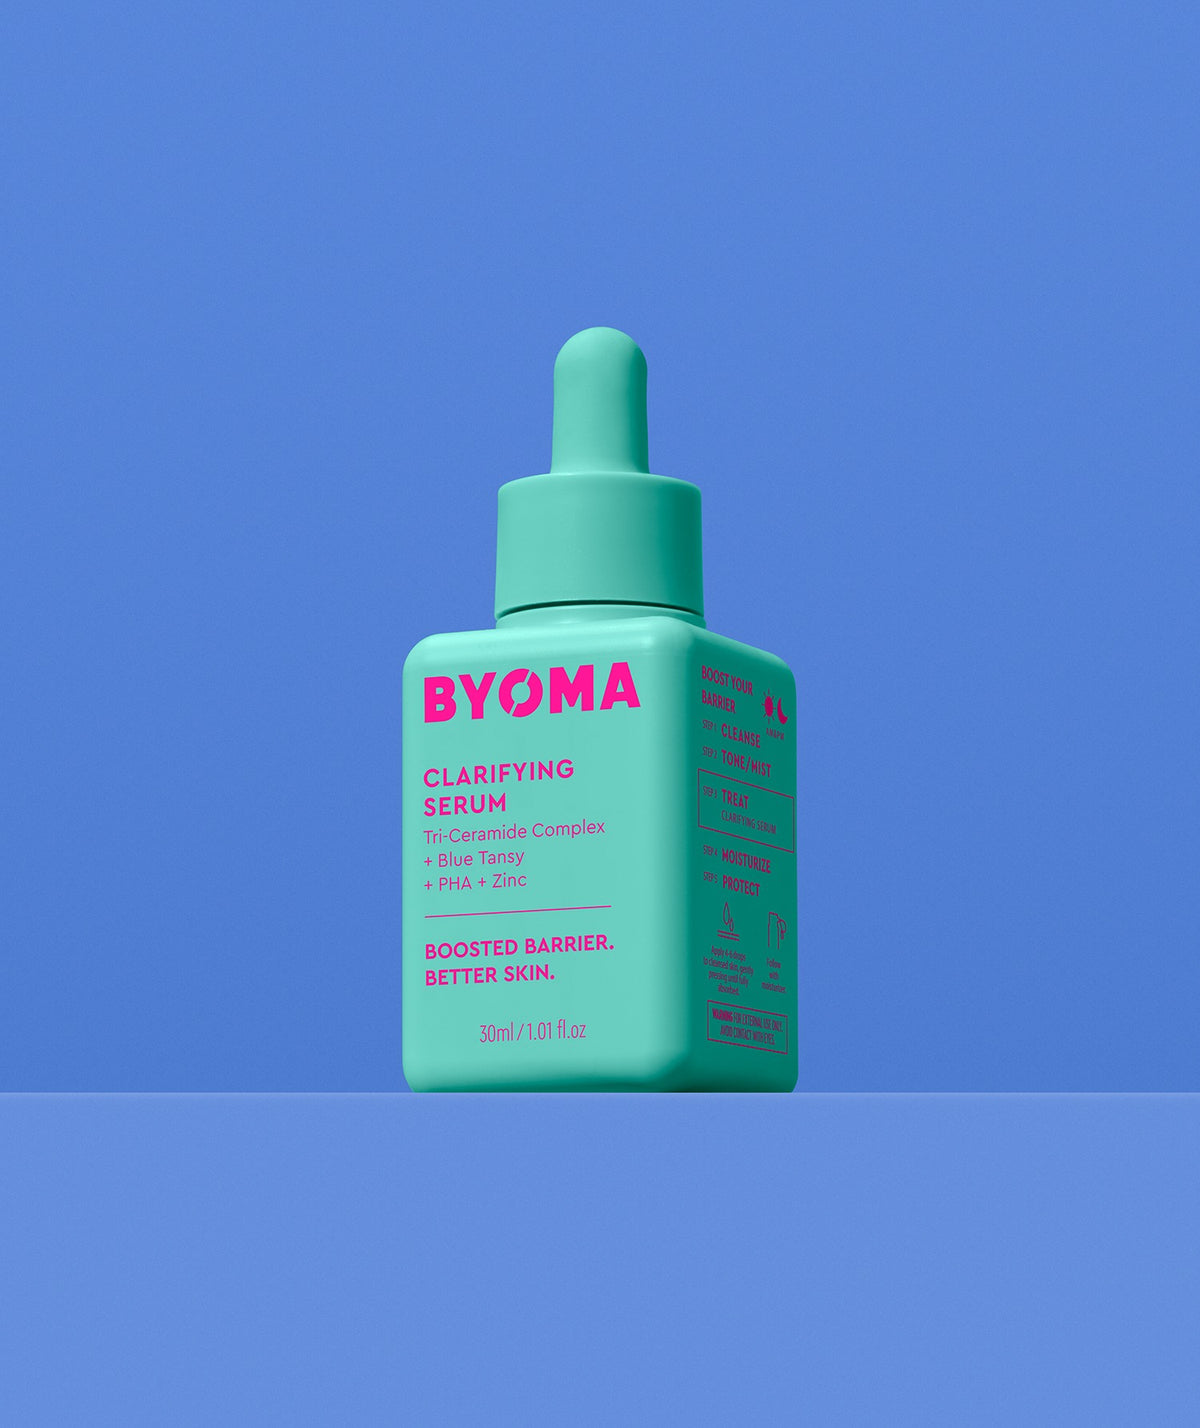 BYOMA Clarifying Serum clarifying facial serum BYOMA   